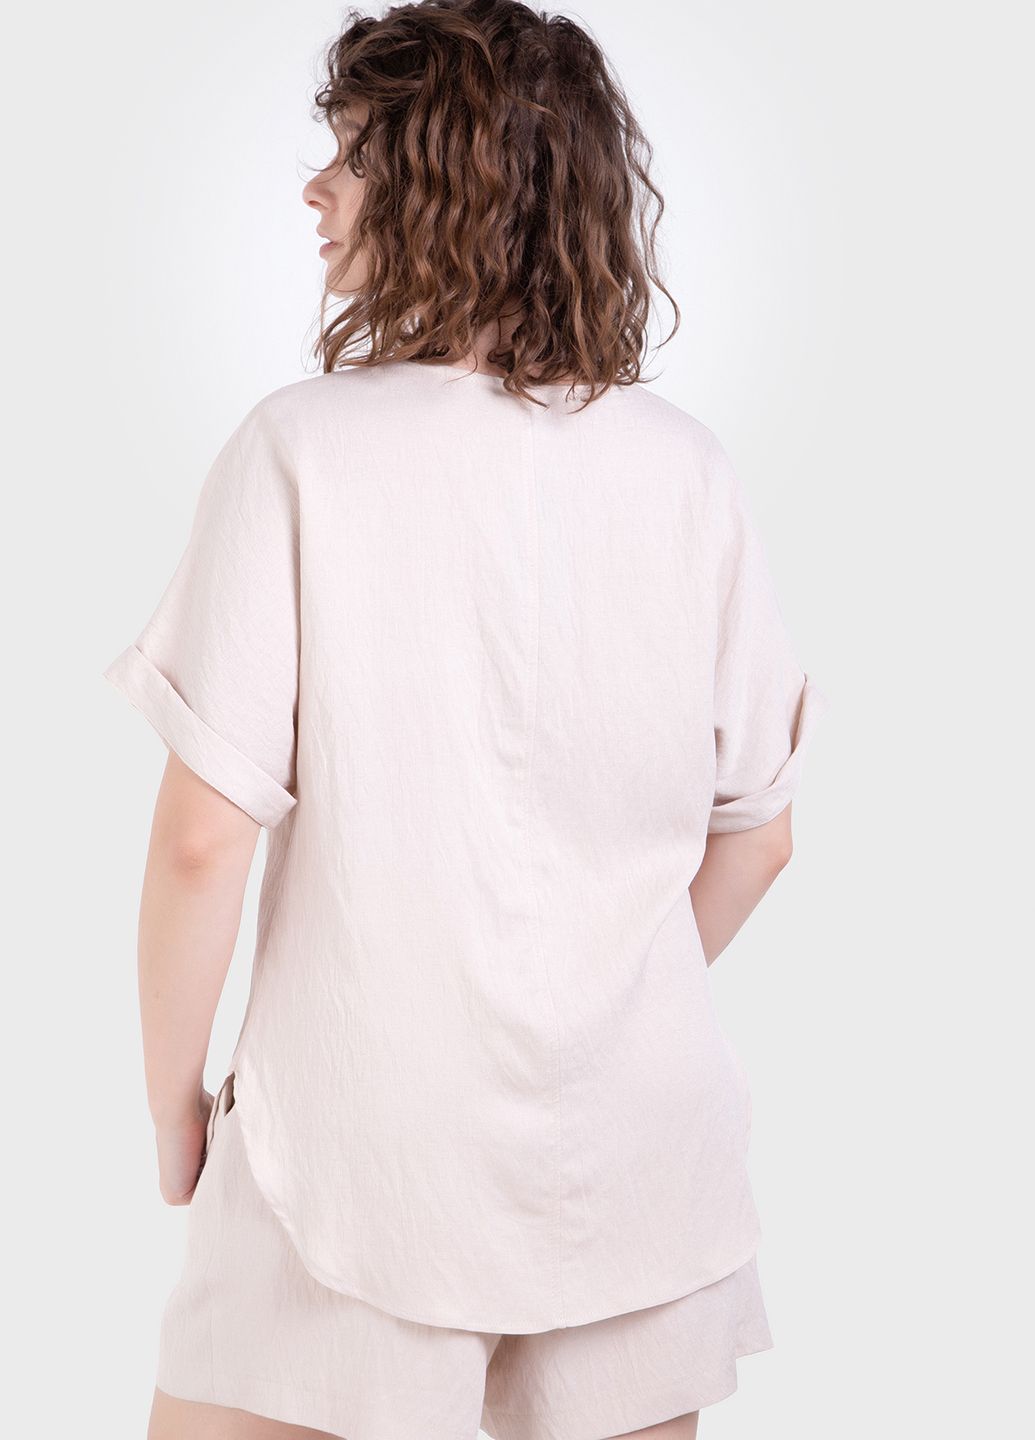 Купить Летний костюм женский двойка бежевого цвета: шорты, футболка Merlini Беневенто 100000141, размер 42-44 в интернет-магазине